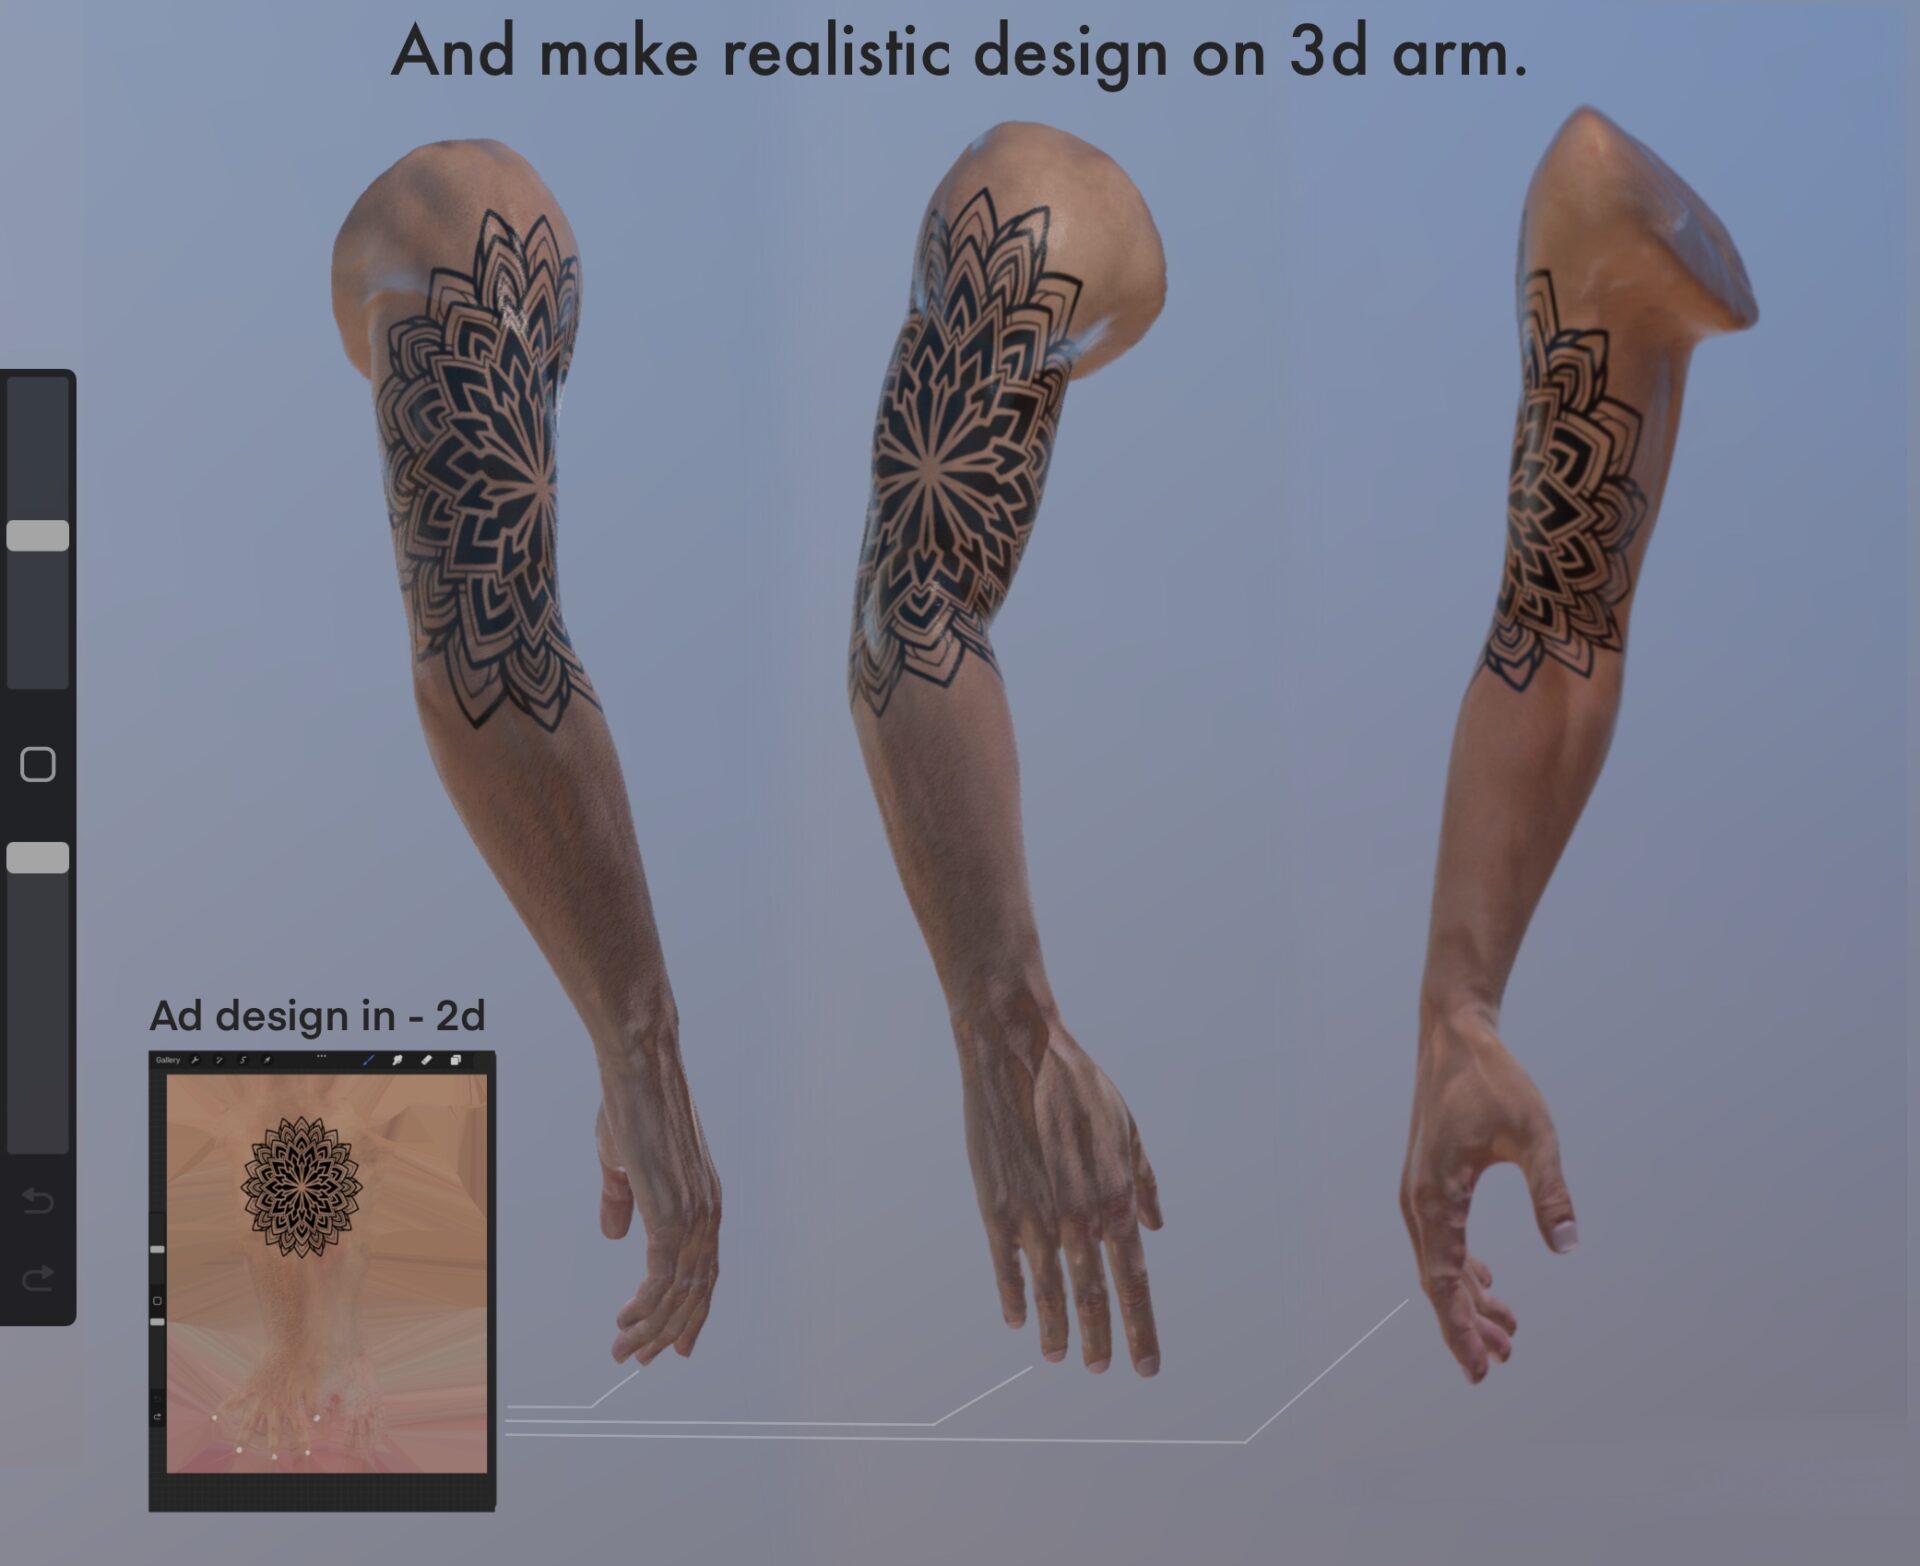 Full Sleeve Tattoos: Picture List Of Full Sleeve Tattoo Designs